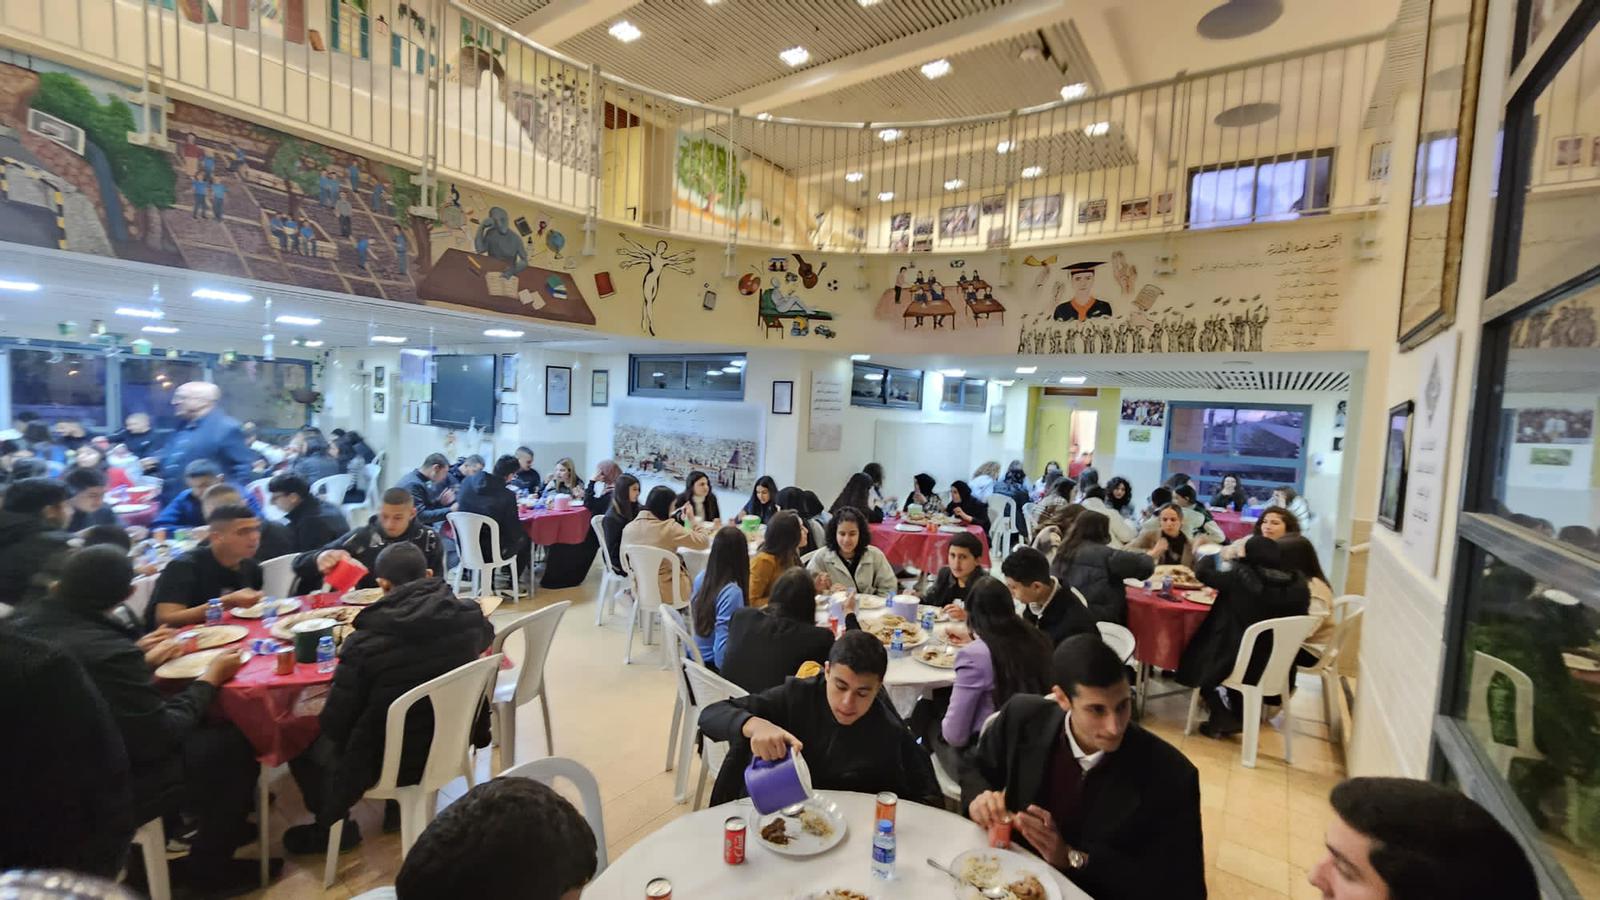 أُمسية رمضانية طيِّبة ومباركة بمشاركة طلابية واسعة في مدرسة الجليل